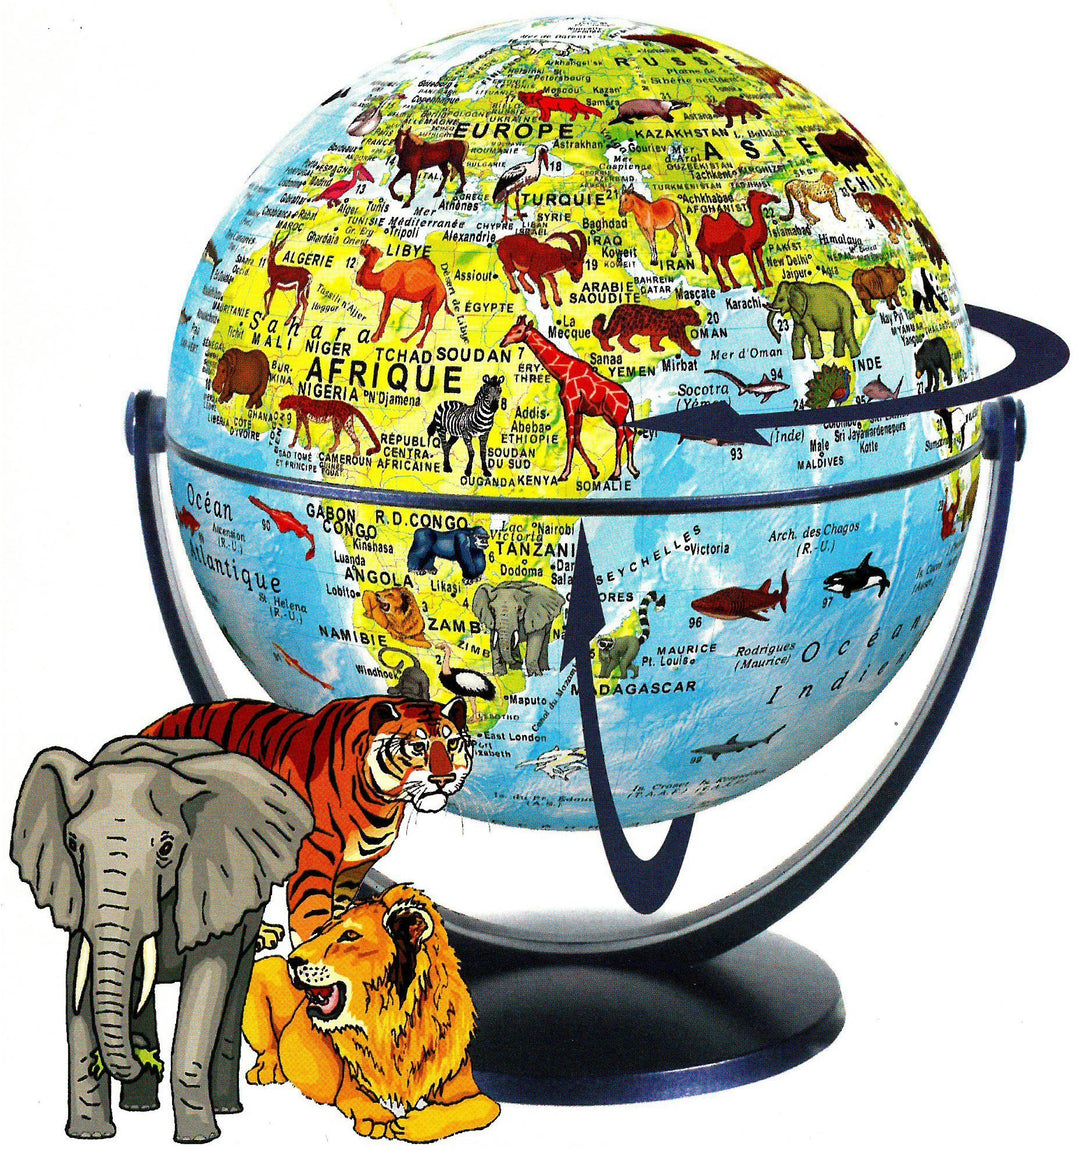 Globe pour enfants, tournant & basculant - Animaux du monde (15 cm